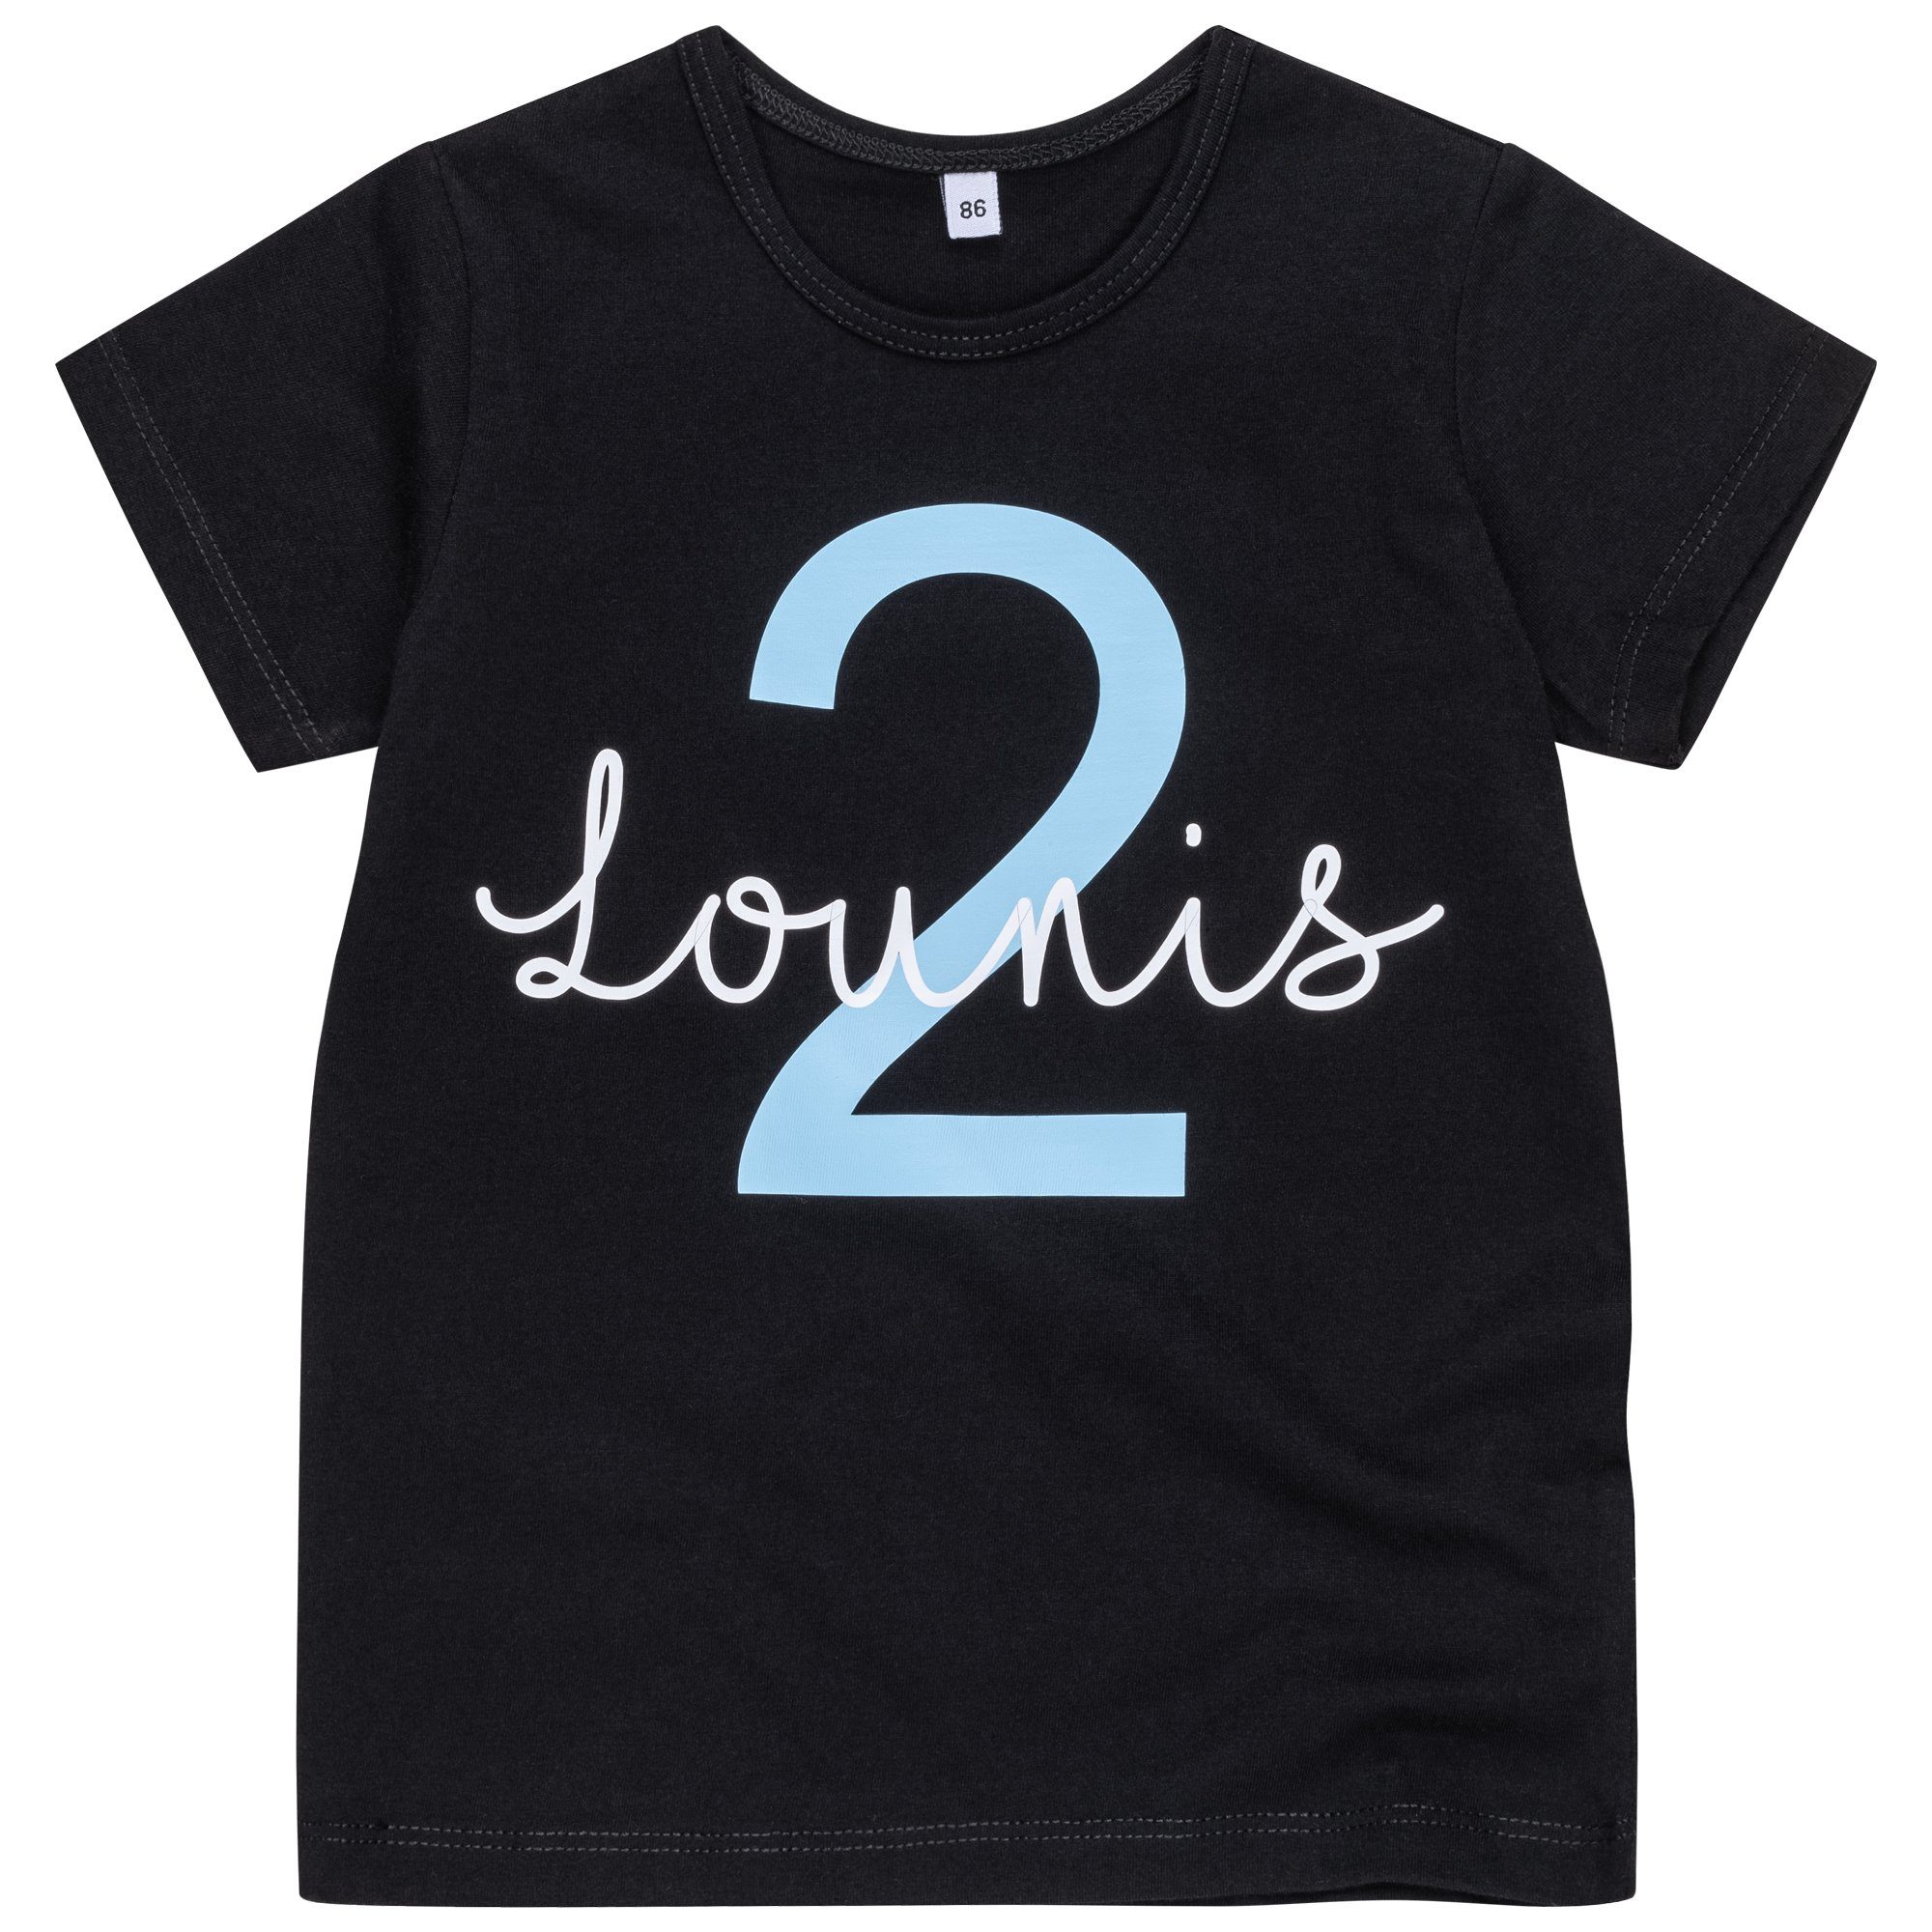 Lounis Print-Shirt Personalisiert, Babyshirt - - Geburtstagsshirt T-Shirt Kindershirt Kurzarm Geburtstag, Hellblau - - Namensshirt